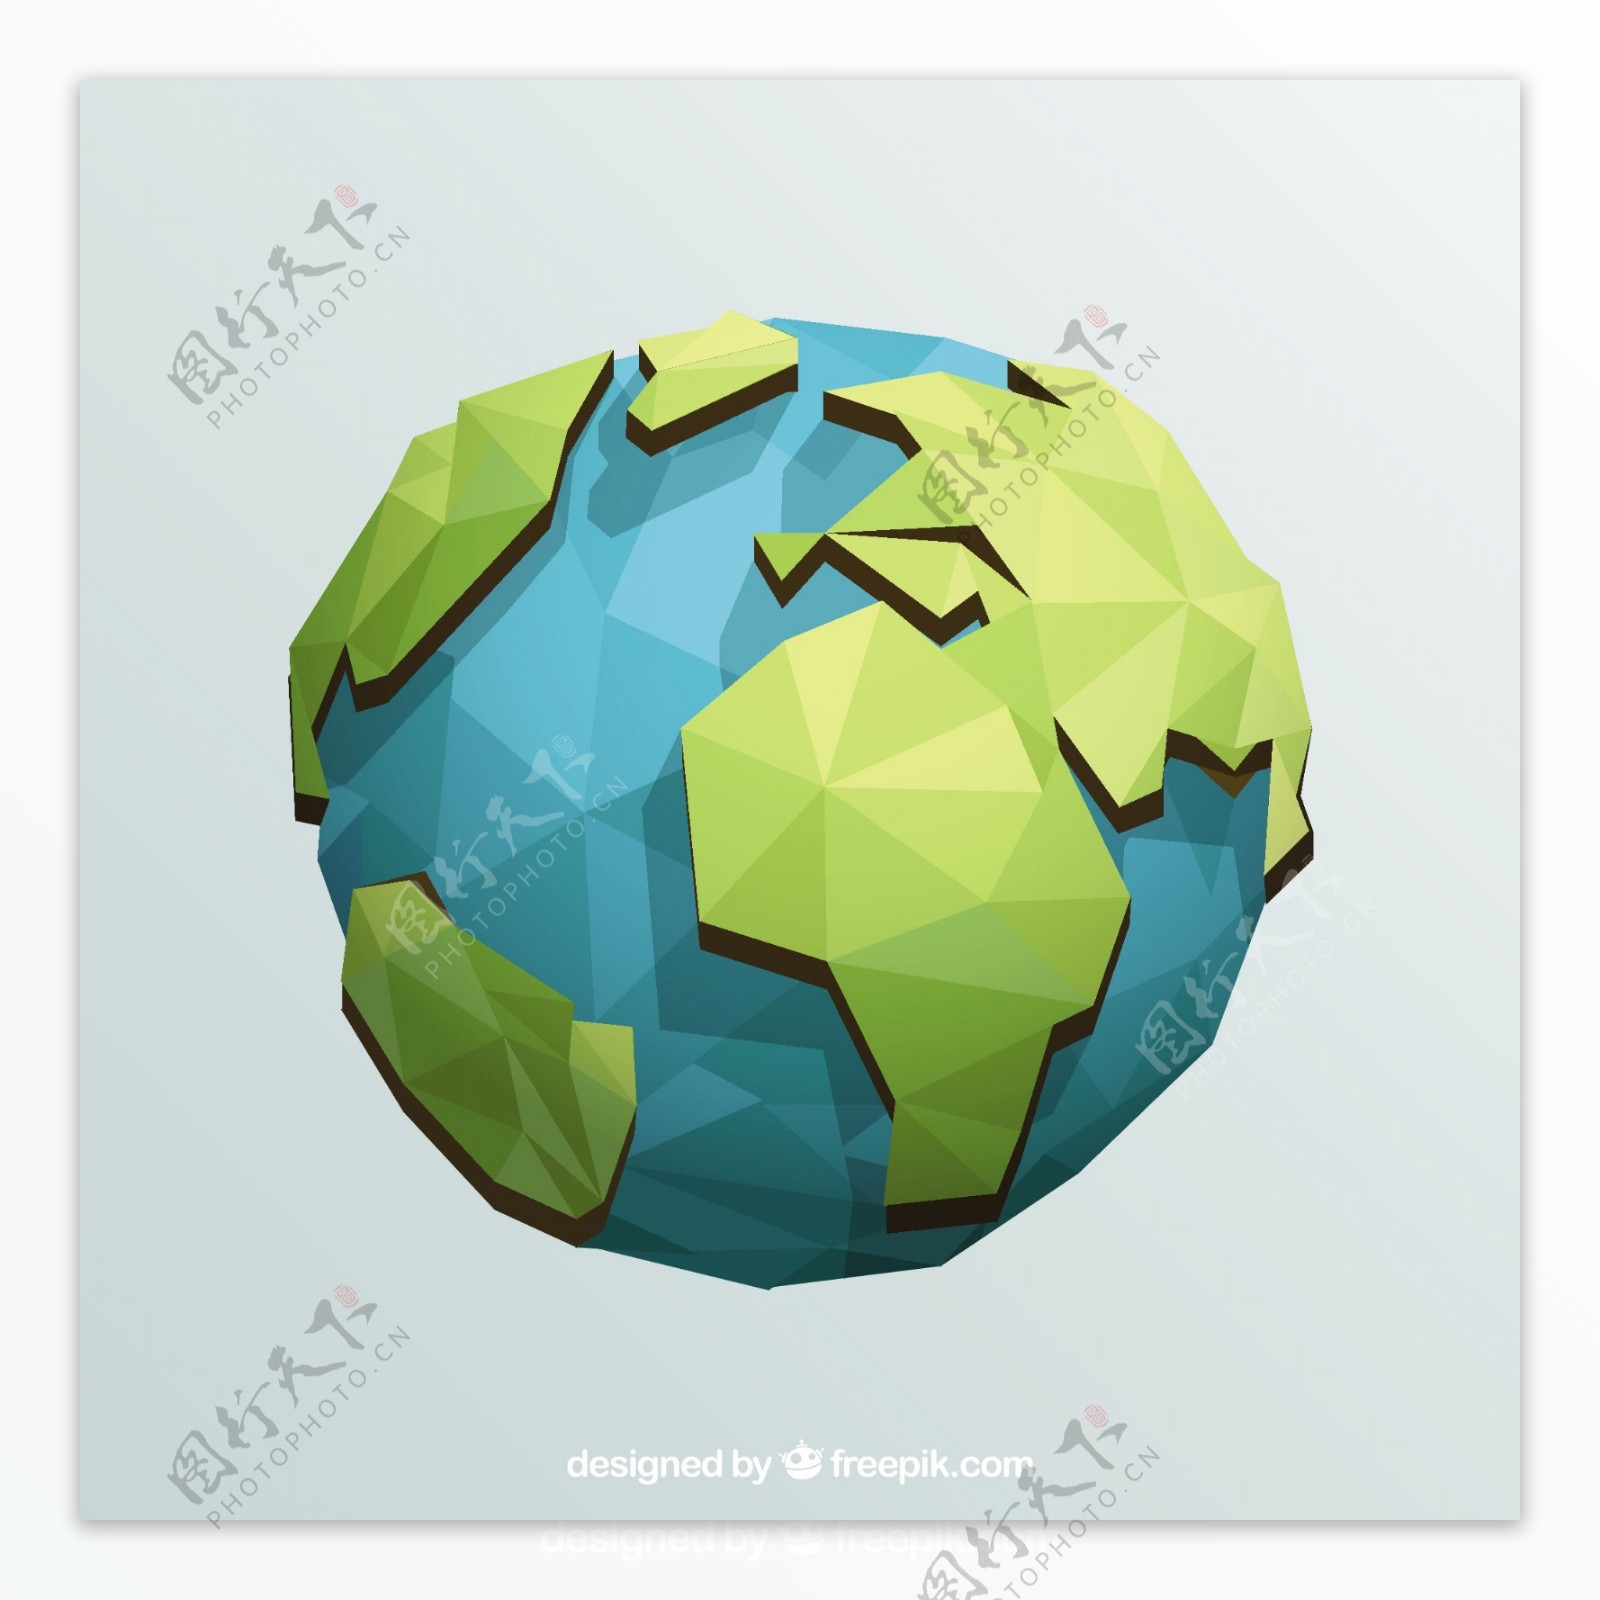 地球球体在几何设计中的应用